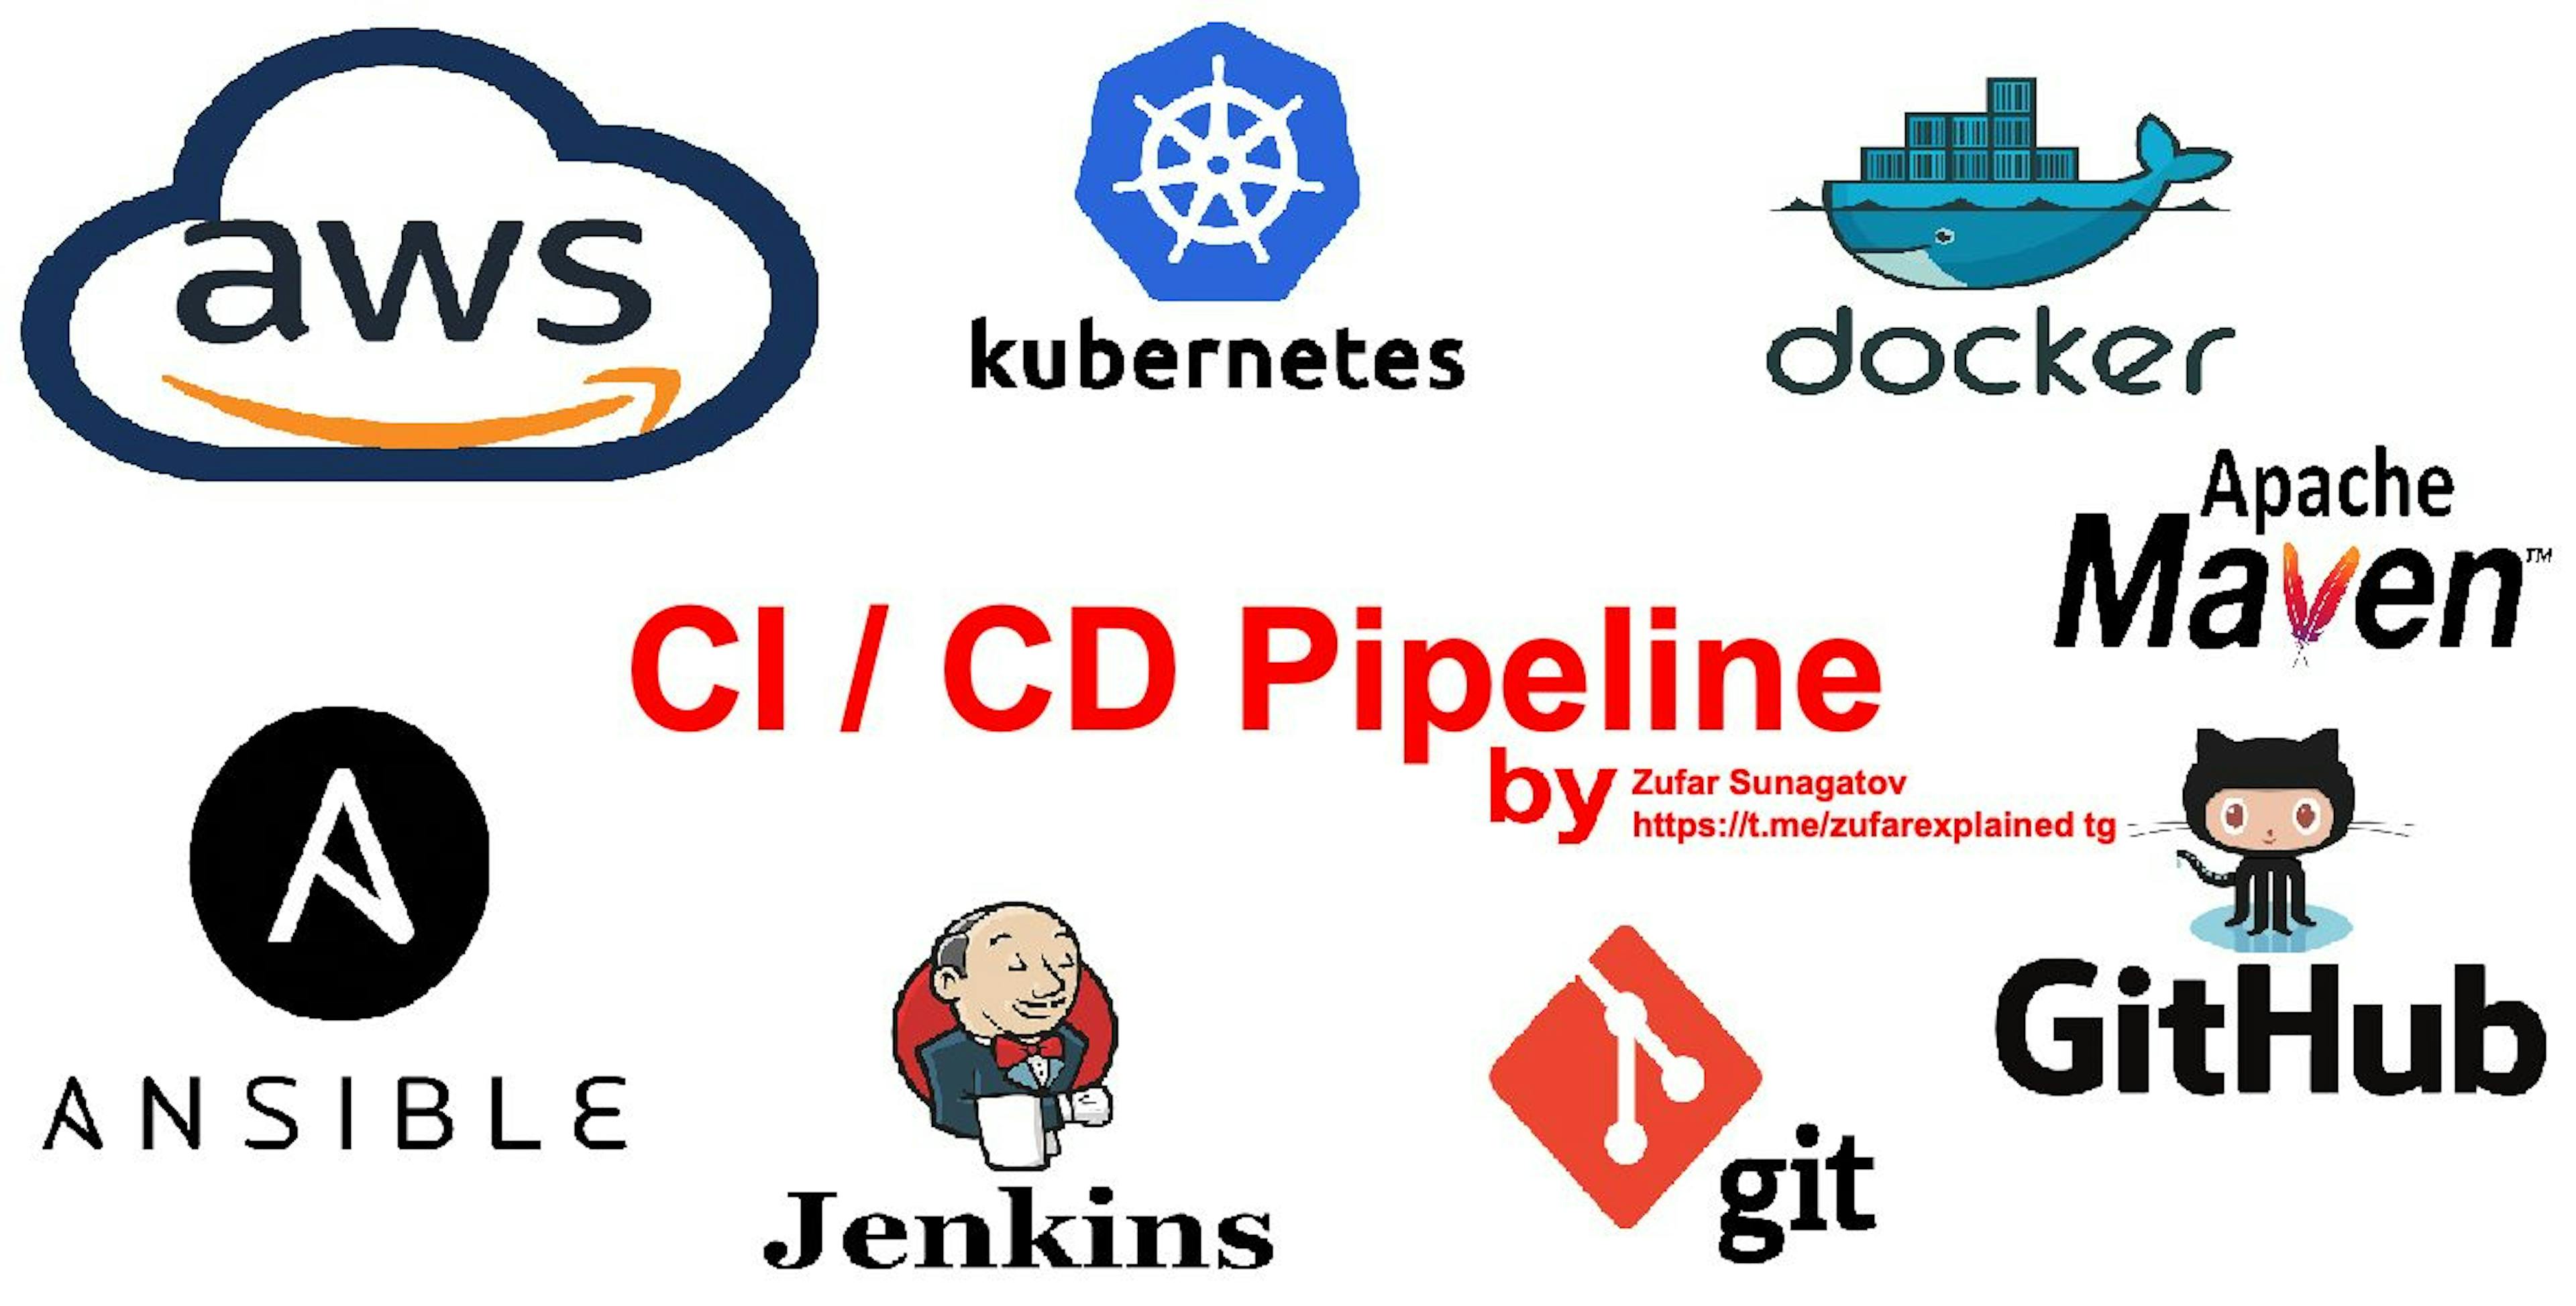 featured image - Xây dựng quy trình CI/CD với AWS, K8S, Docker, Ansible, Git, Github, Apache Maven và Jenkins